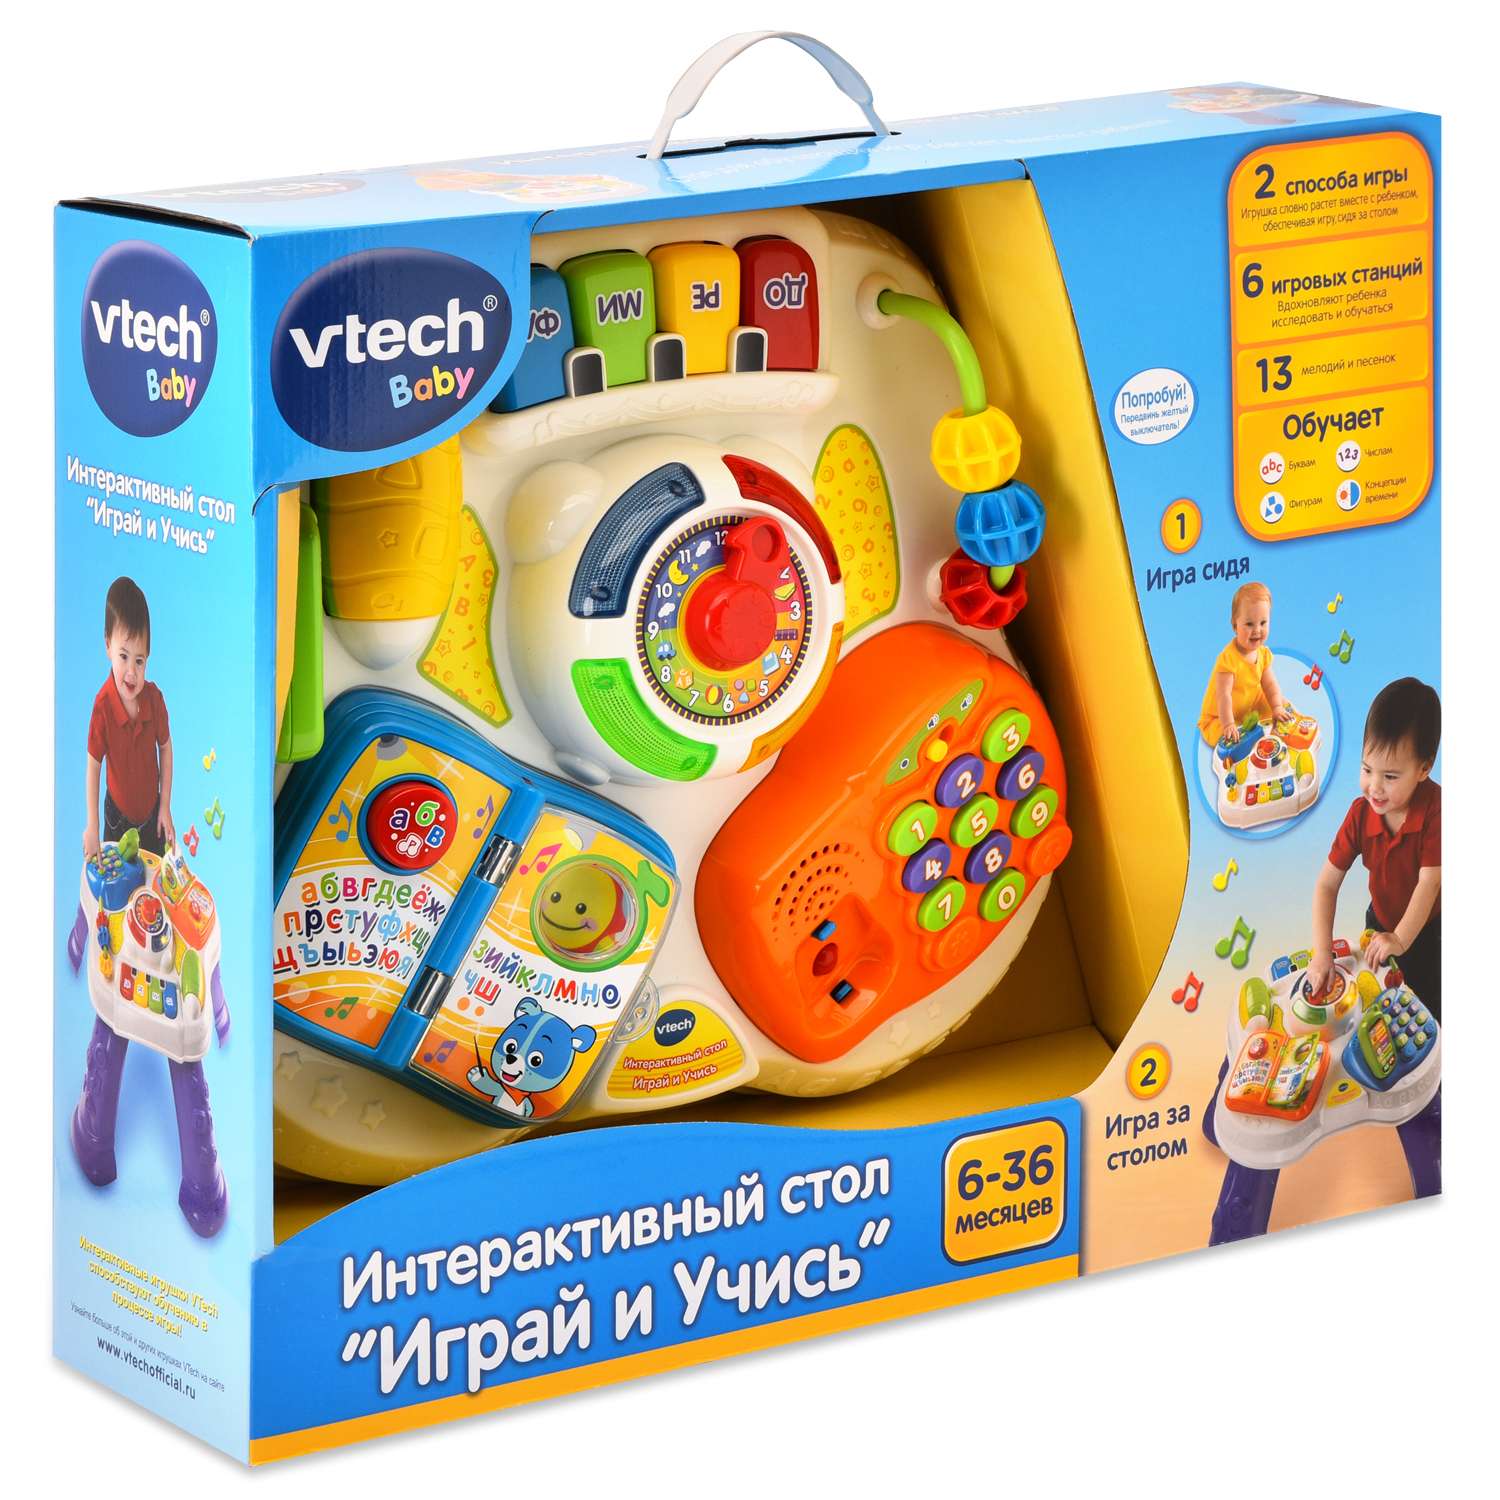 Игрушка Vtech Играй и Учись Стол интерактивный 80-148026 - фото 2